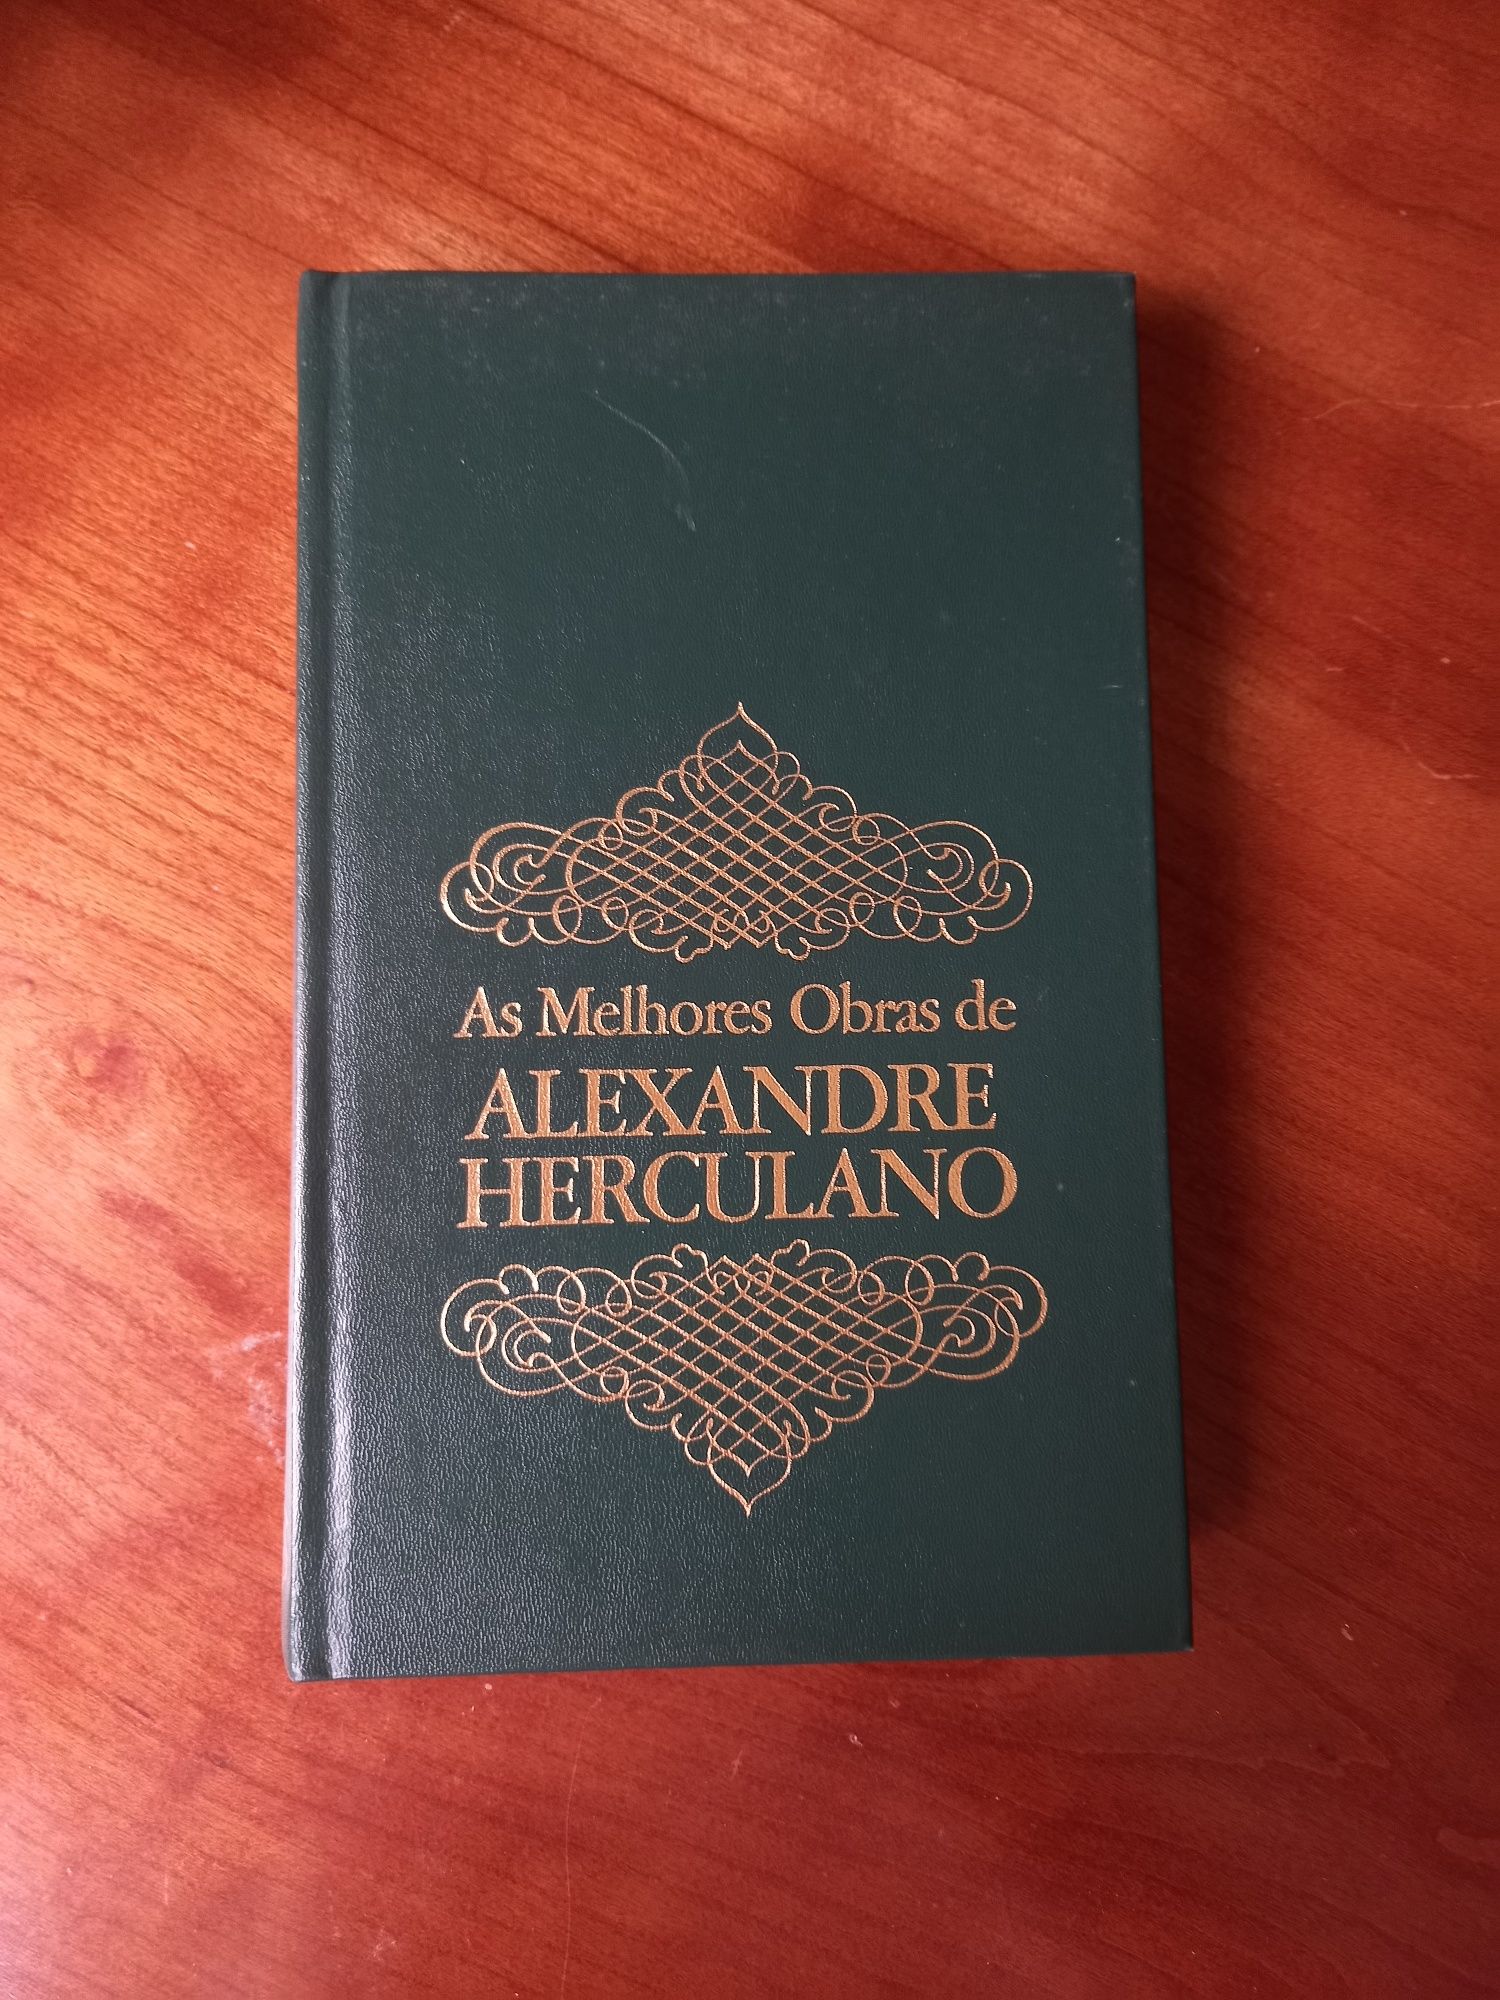 Coleção de Livros - As Melhores Obras de Alexandre Herculano